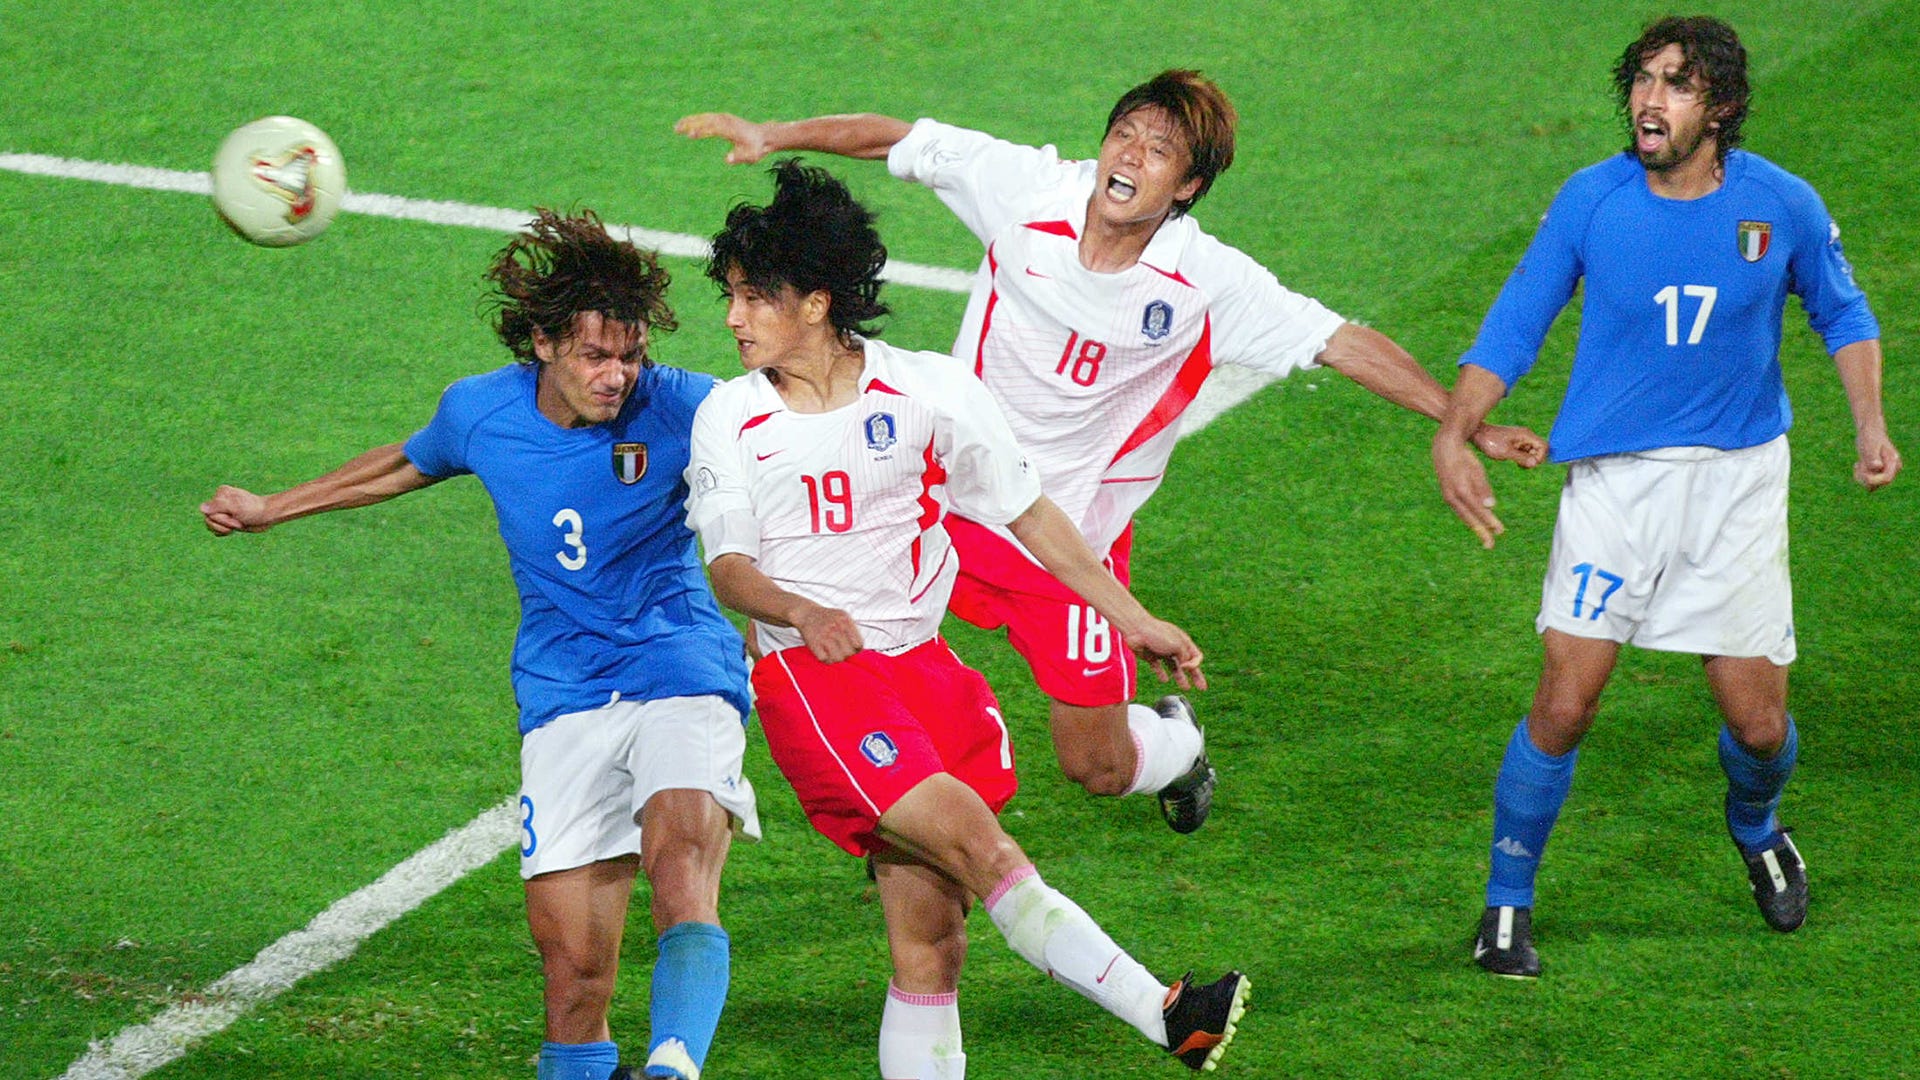 Ahn Jung-hwan Paolo Maldini South Korea Italy 2002 Koobkii Adduunka